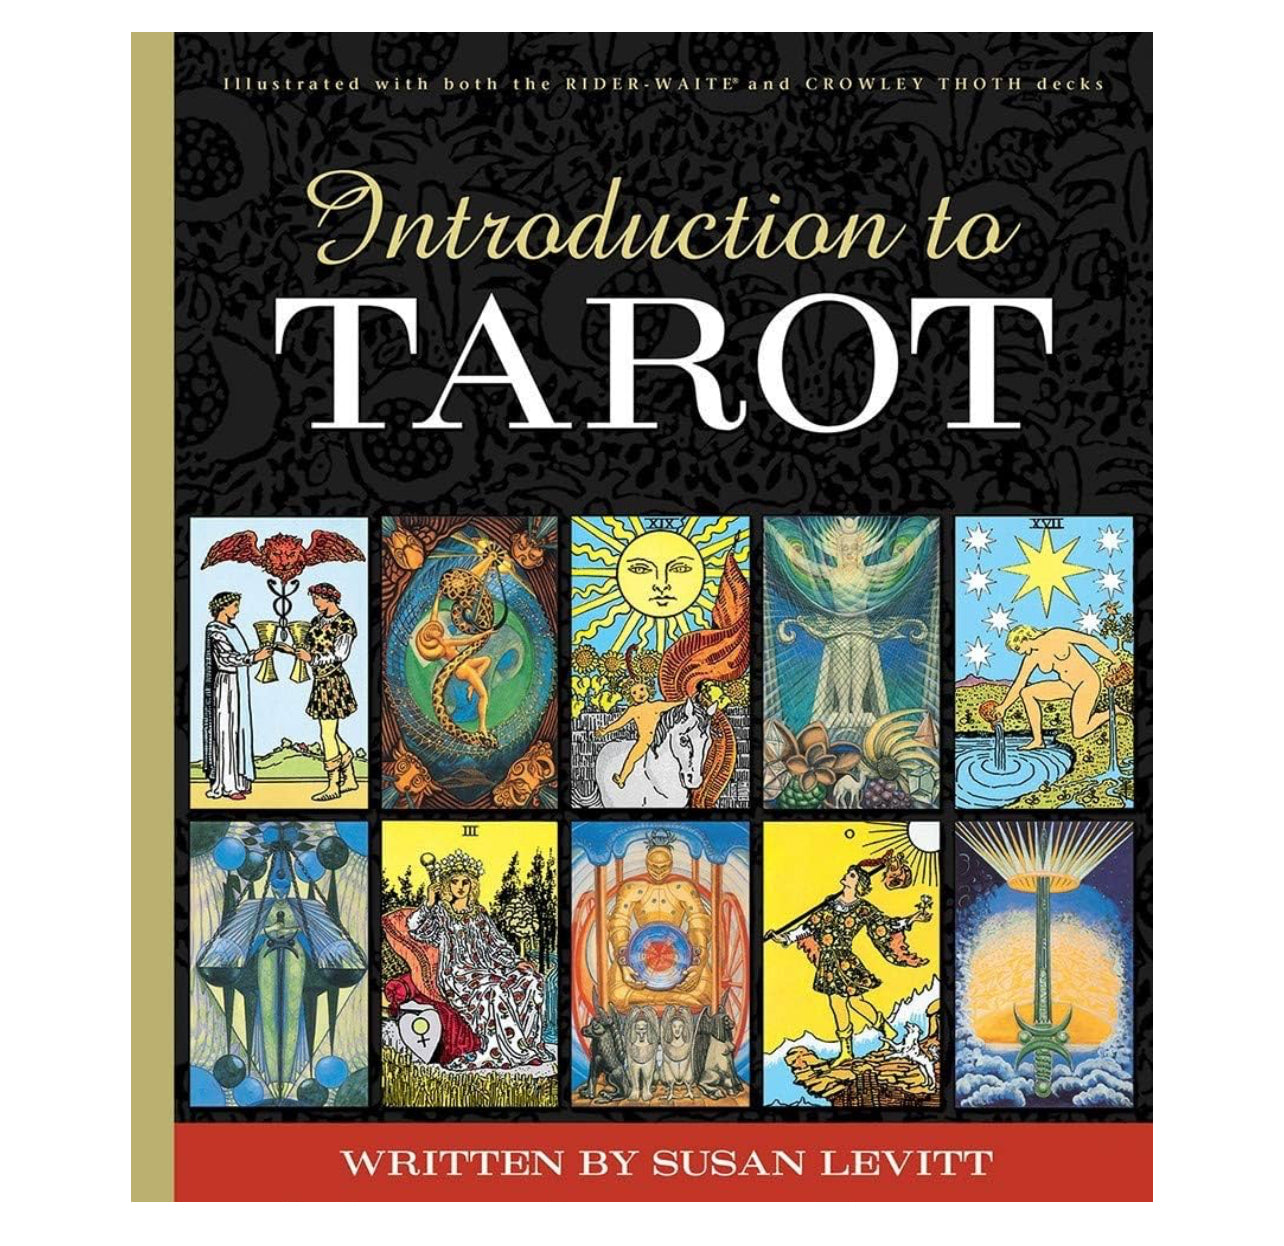 Complete Tarot Kit Deck & Book By Susan Levitt